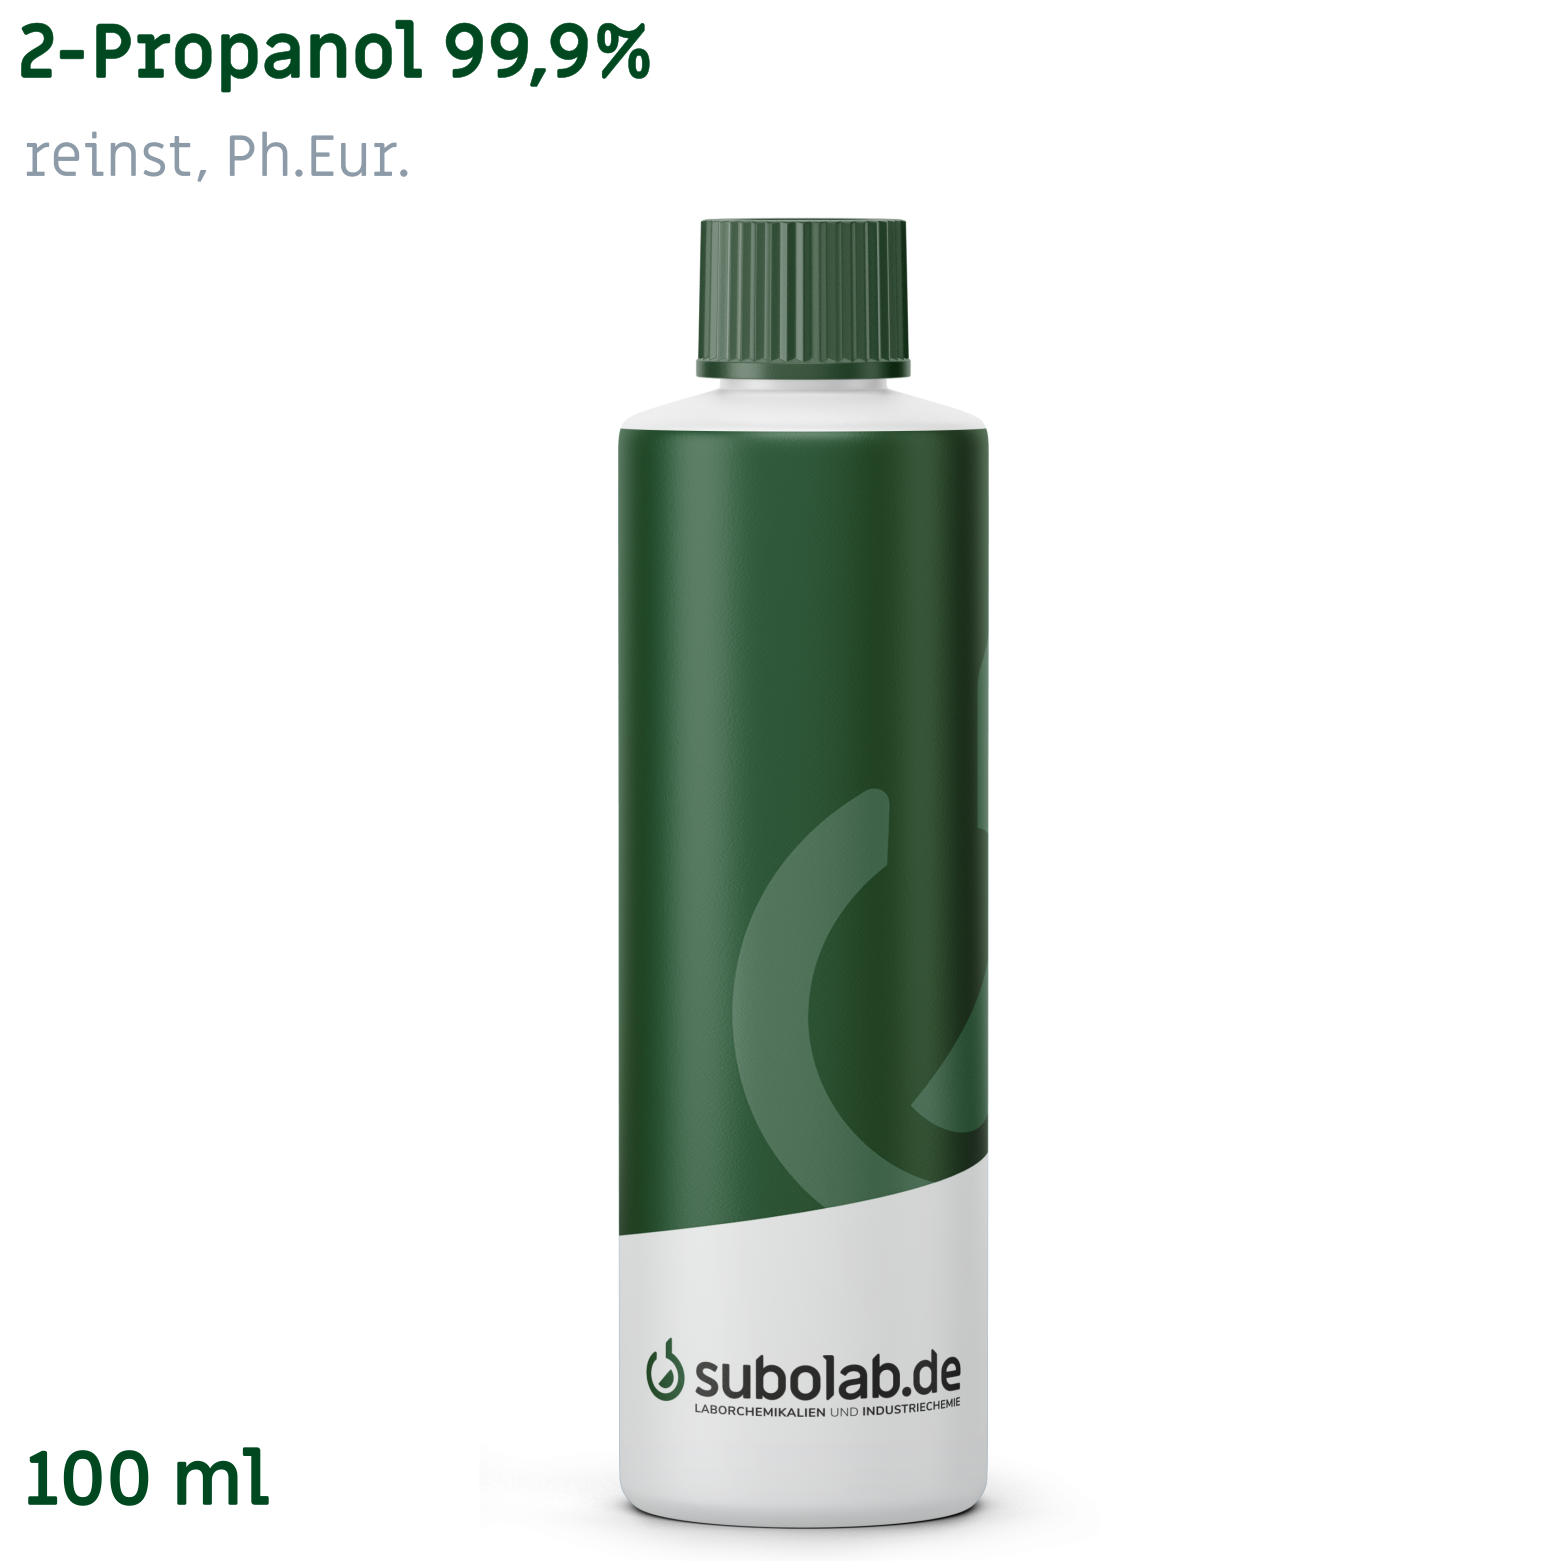 Bild von 2-Propanol 99,9% reinst, Ph.Eur. (100 ml)